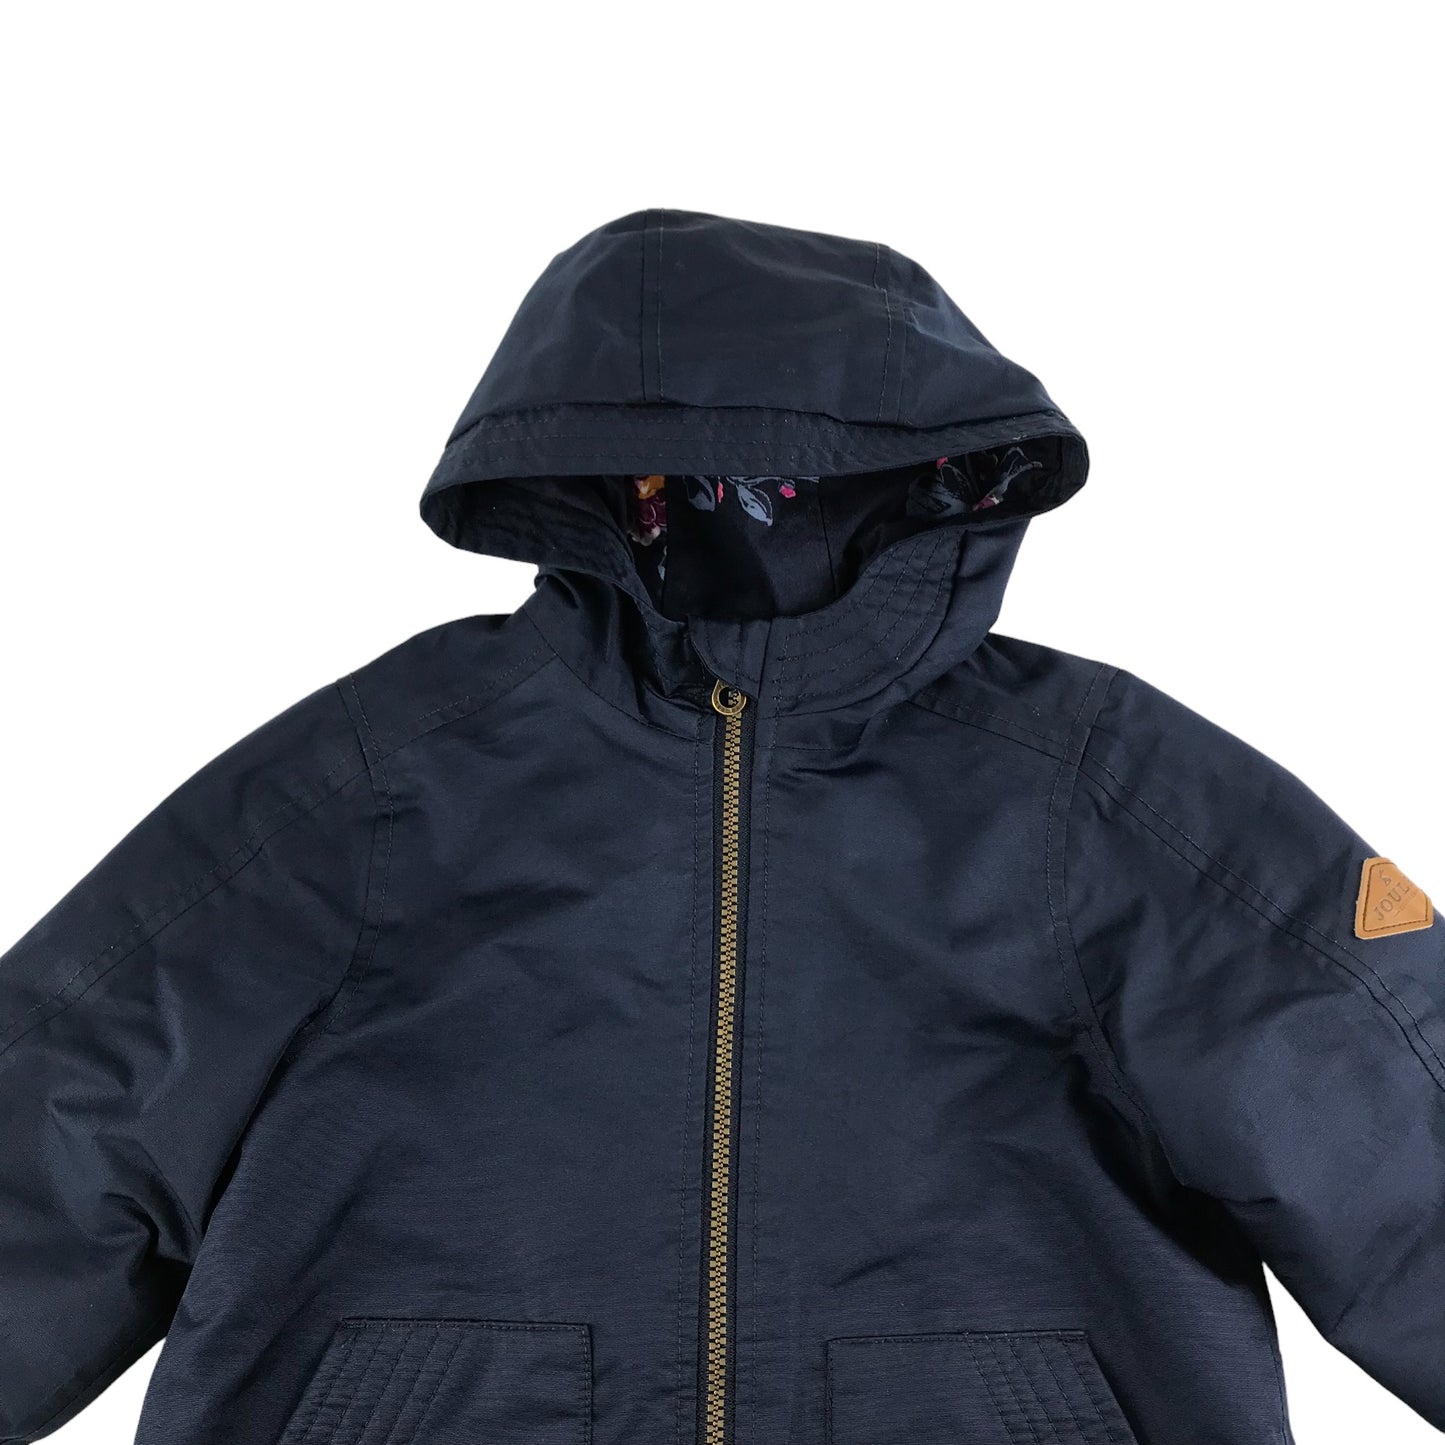 Joules Jacket Age 5-6 Navy Blue Waterproof Fleece Lined A-line